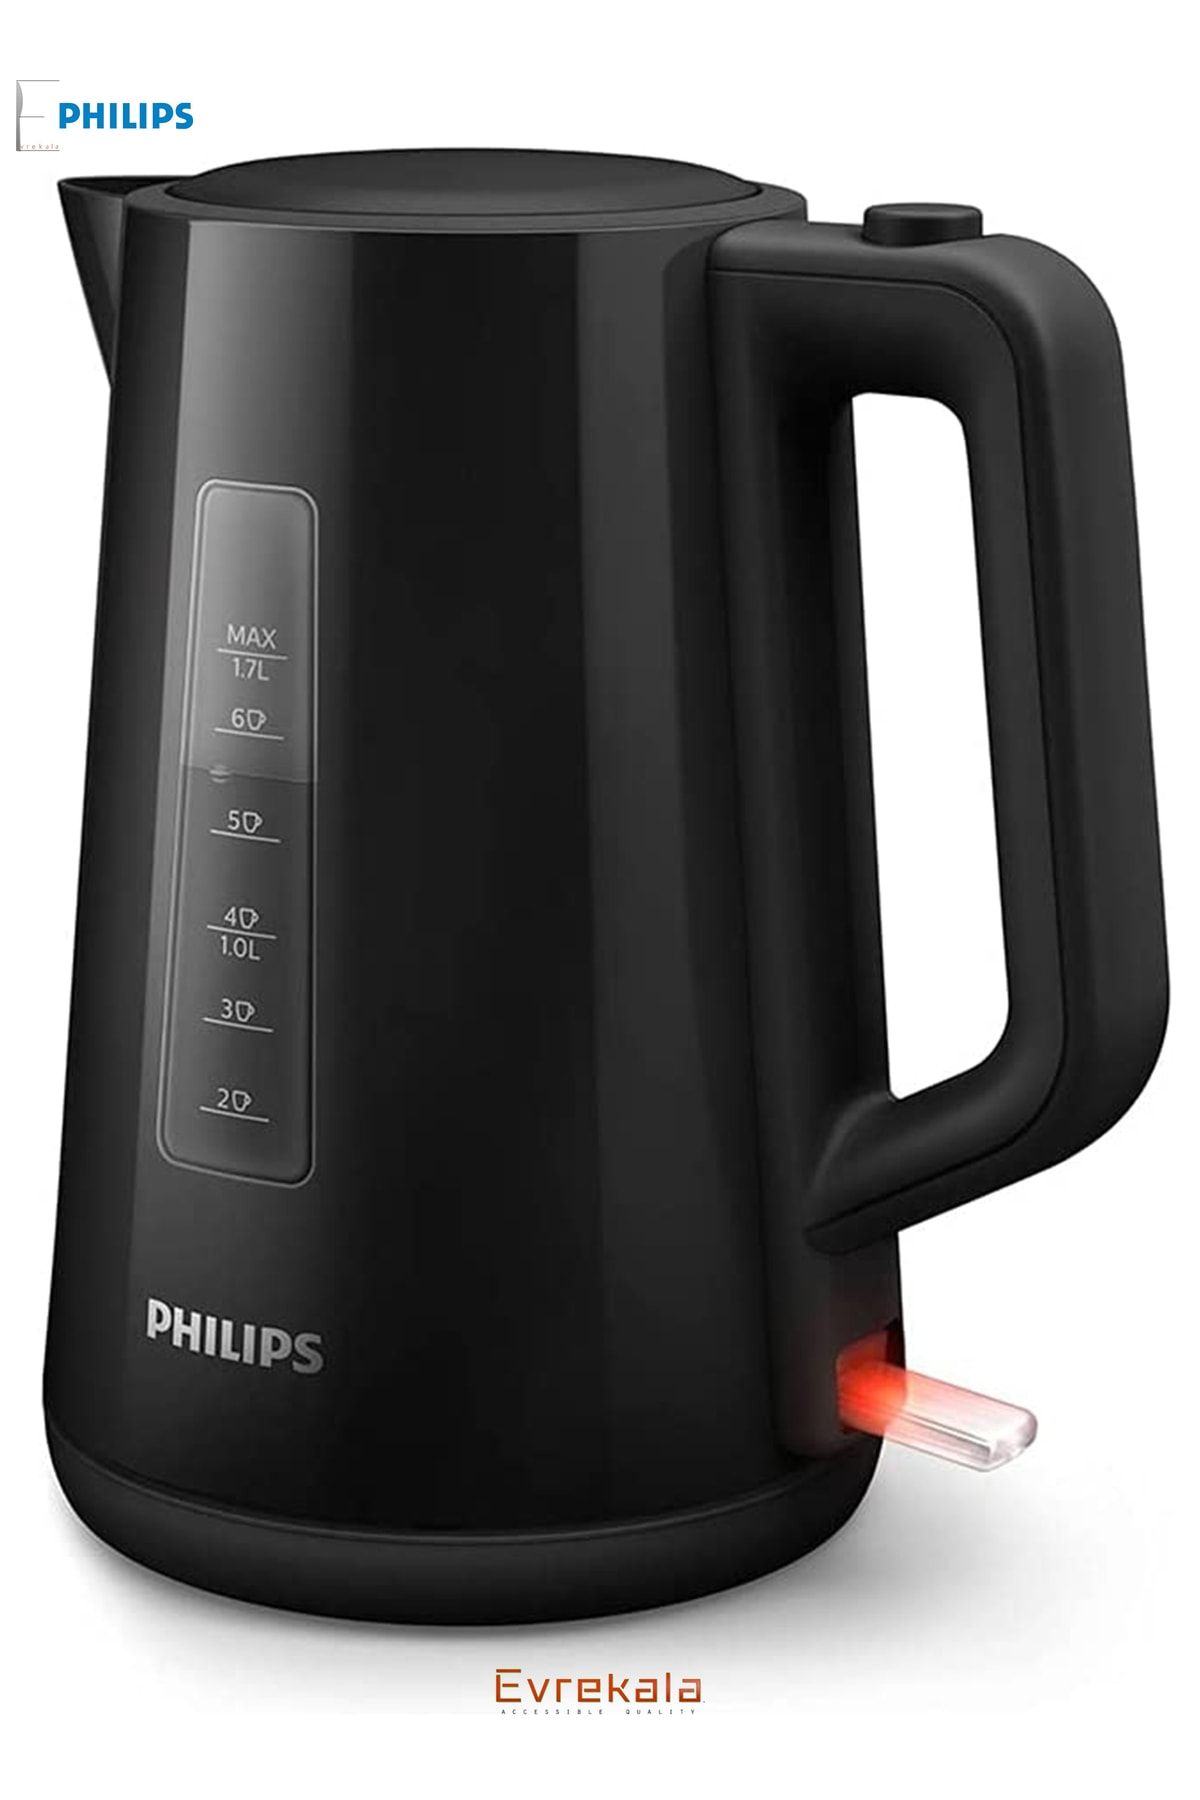 Philips Evrekala Shop Su Isıtıcısı Kettle New Series Black